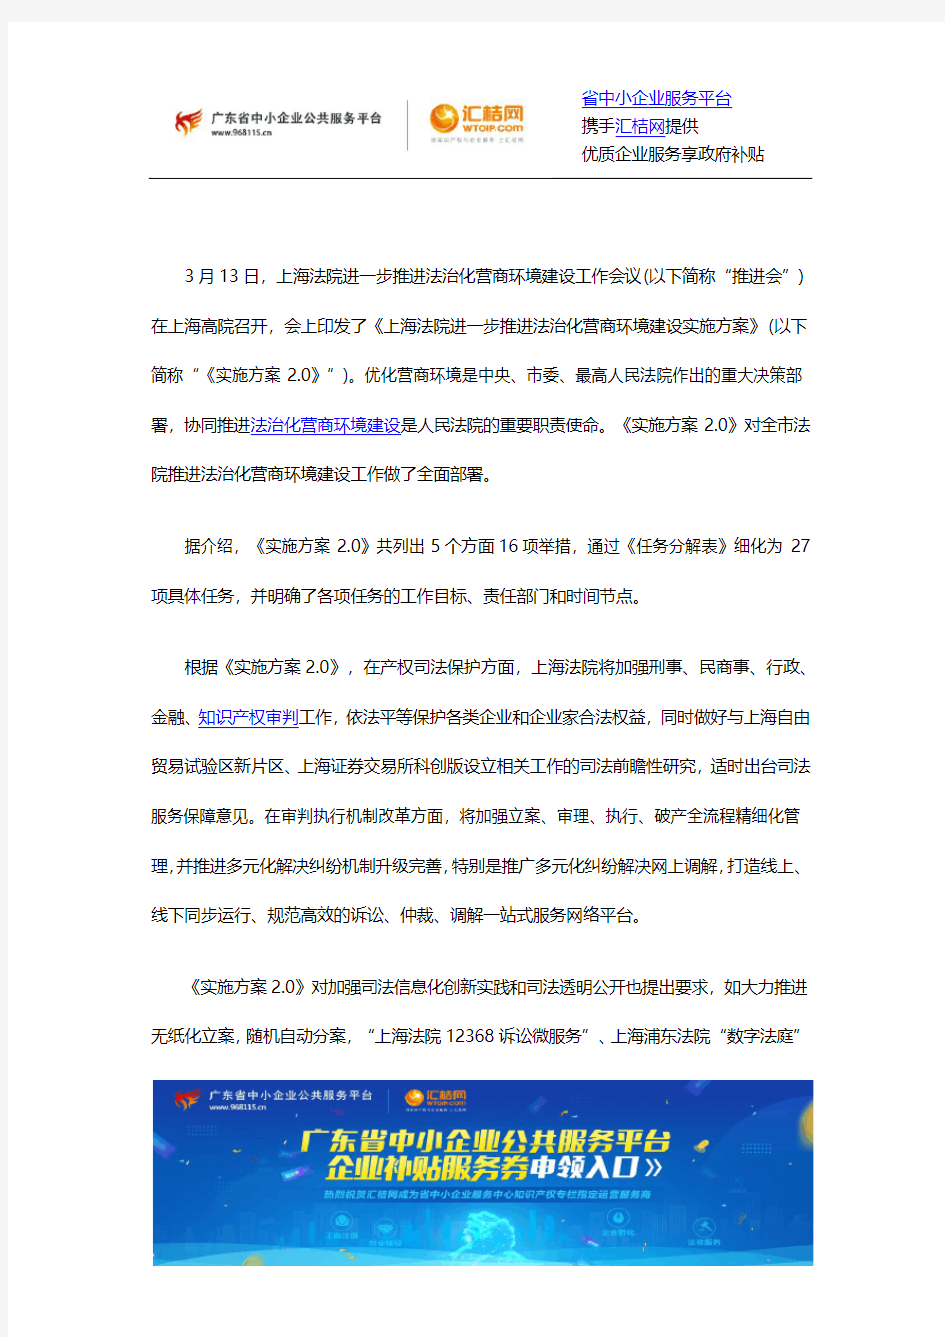 上海高院出台推进法治化营商环境建设实施方案2.0版